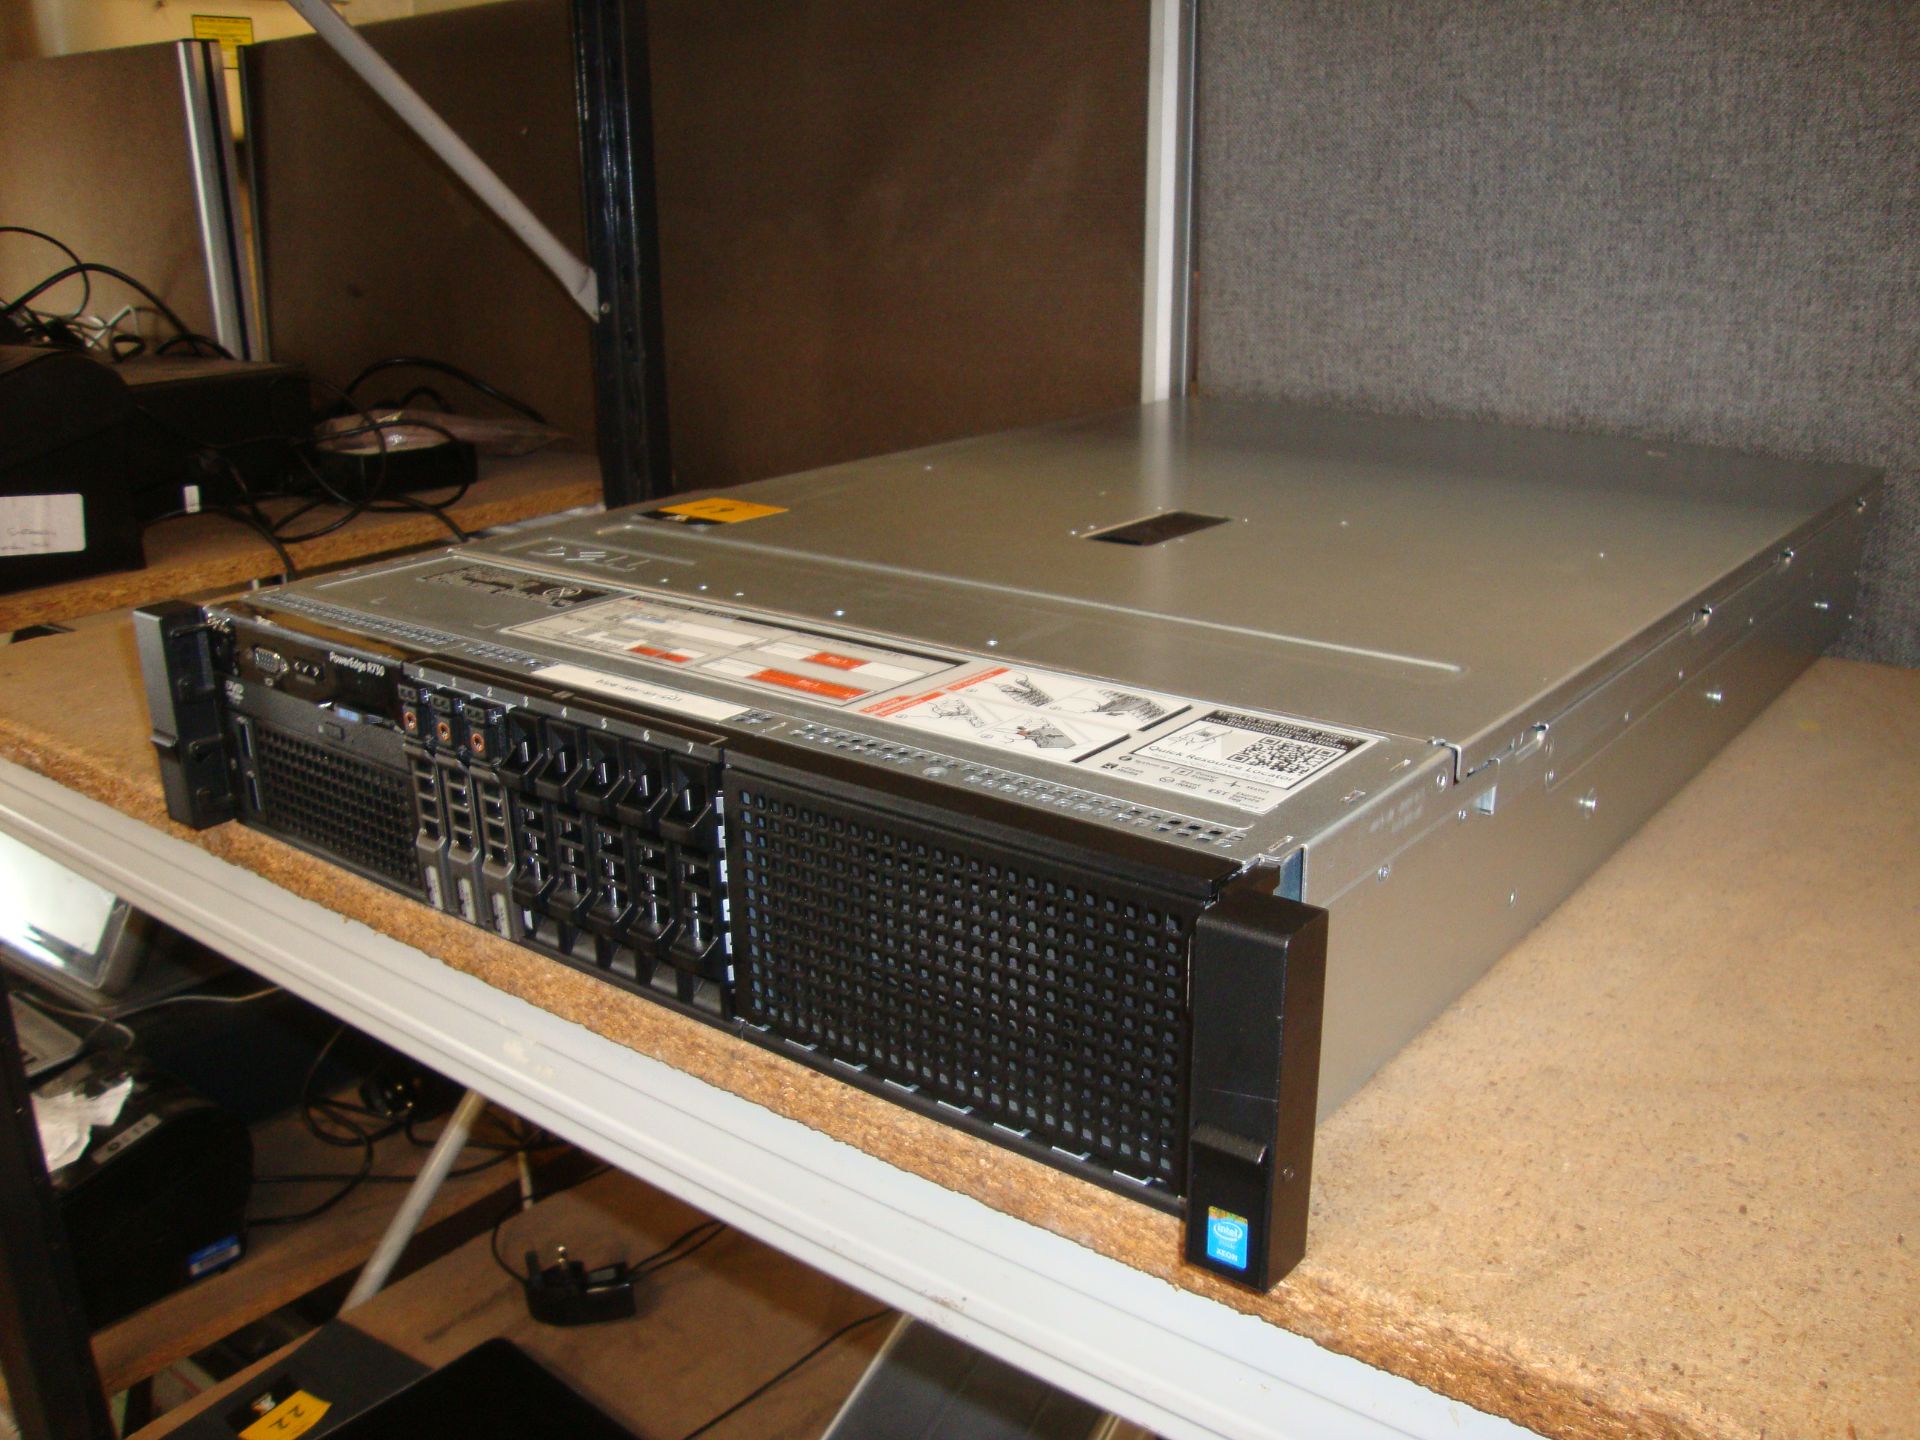 Dell PowerEdge model R730 server with twin Xeon 6 Core E5-2609 V3 1.9 GHz processors, 96Gb RAM, - Bild 2 aus 15